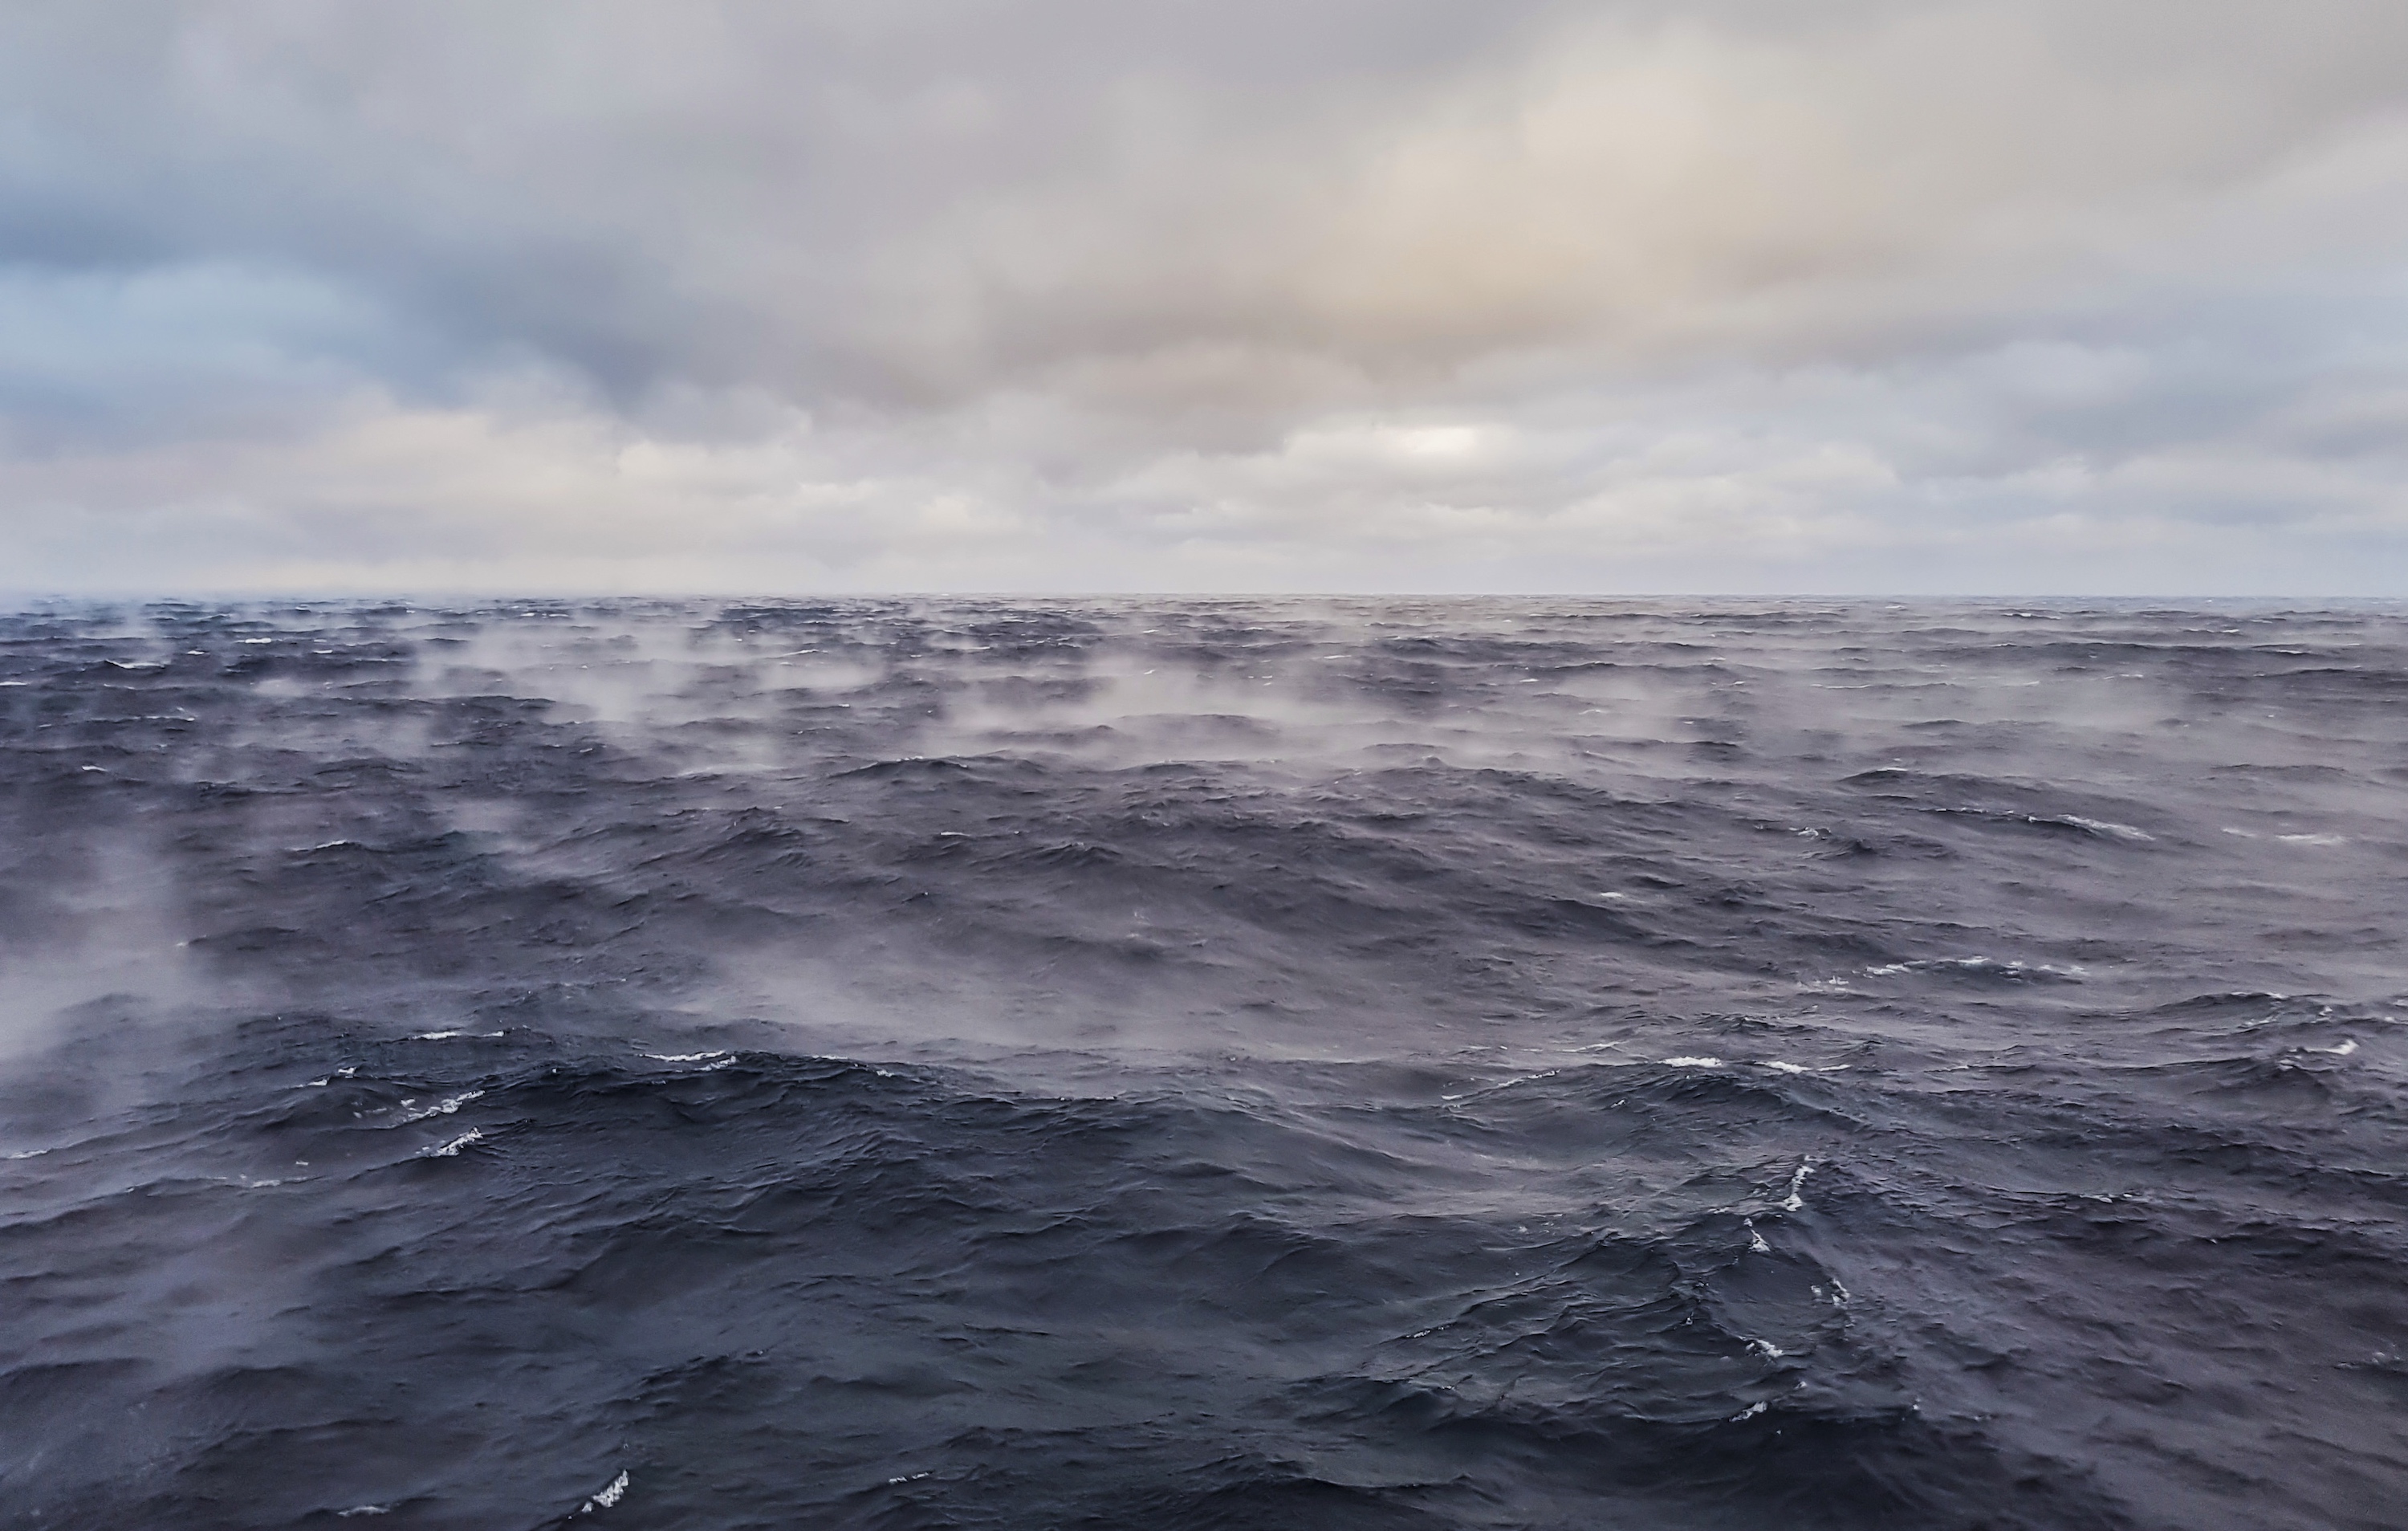 Des chercheurs de l’université de Nouvelle-Galles du Sud (Australie) tentent de déterminer avec précision comment la température de l’océan évolue pour aider à mieux prévoir le changement climatique à venir. © donvictori0, Adobe Stock